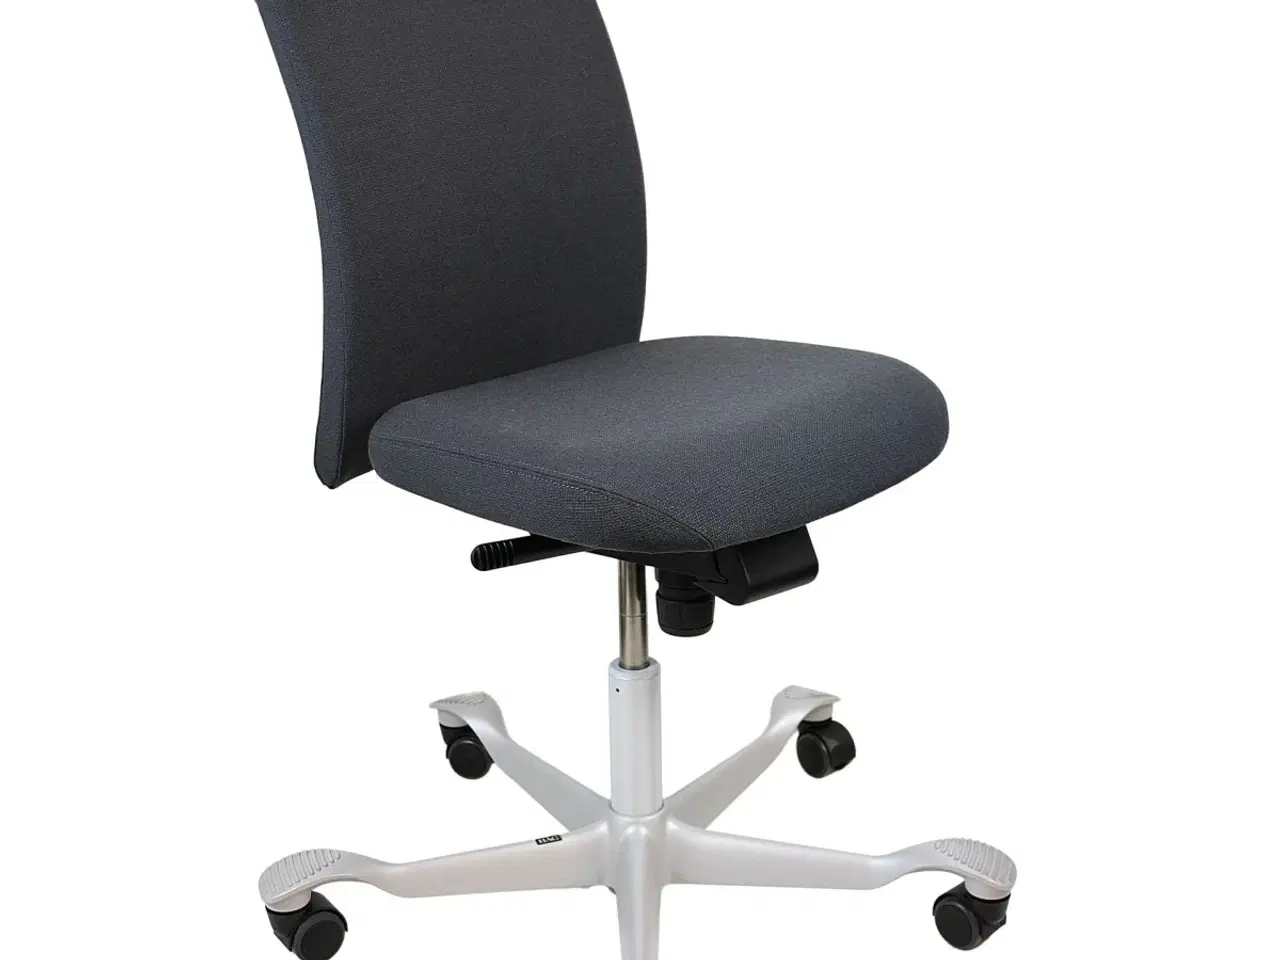 Billede 1 - Håg kontorstol H04 4100 Ny stol